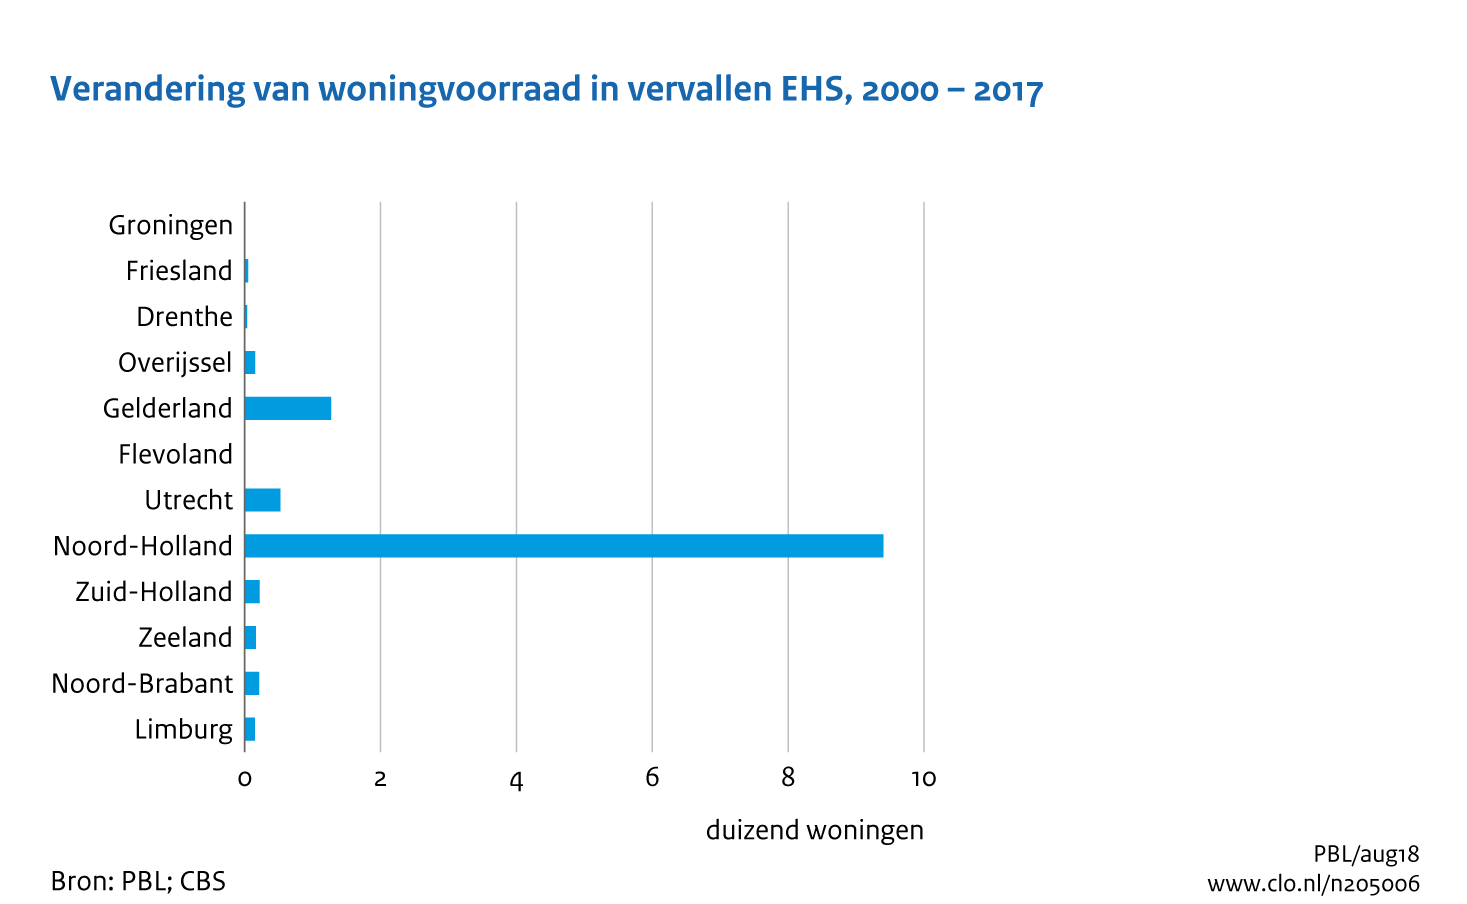 Figuur  Verandering in woningvoorraad in vervallen EHS, 2000-2017. In de rest van de tekst wordt deze figuur uitgebreider uitgelegd.